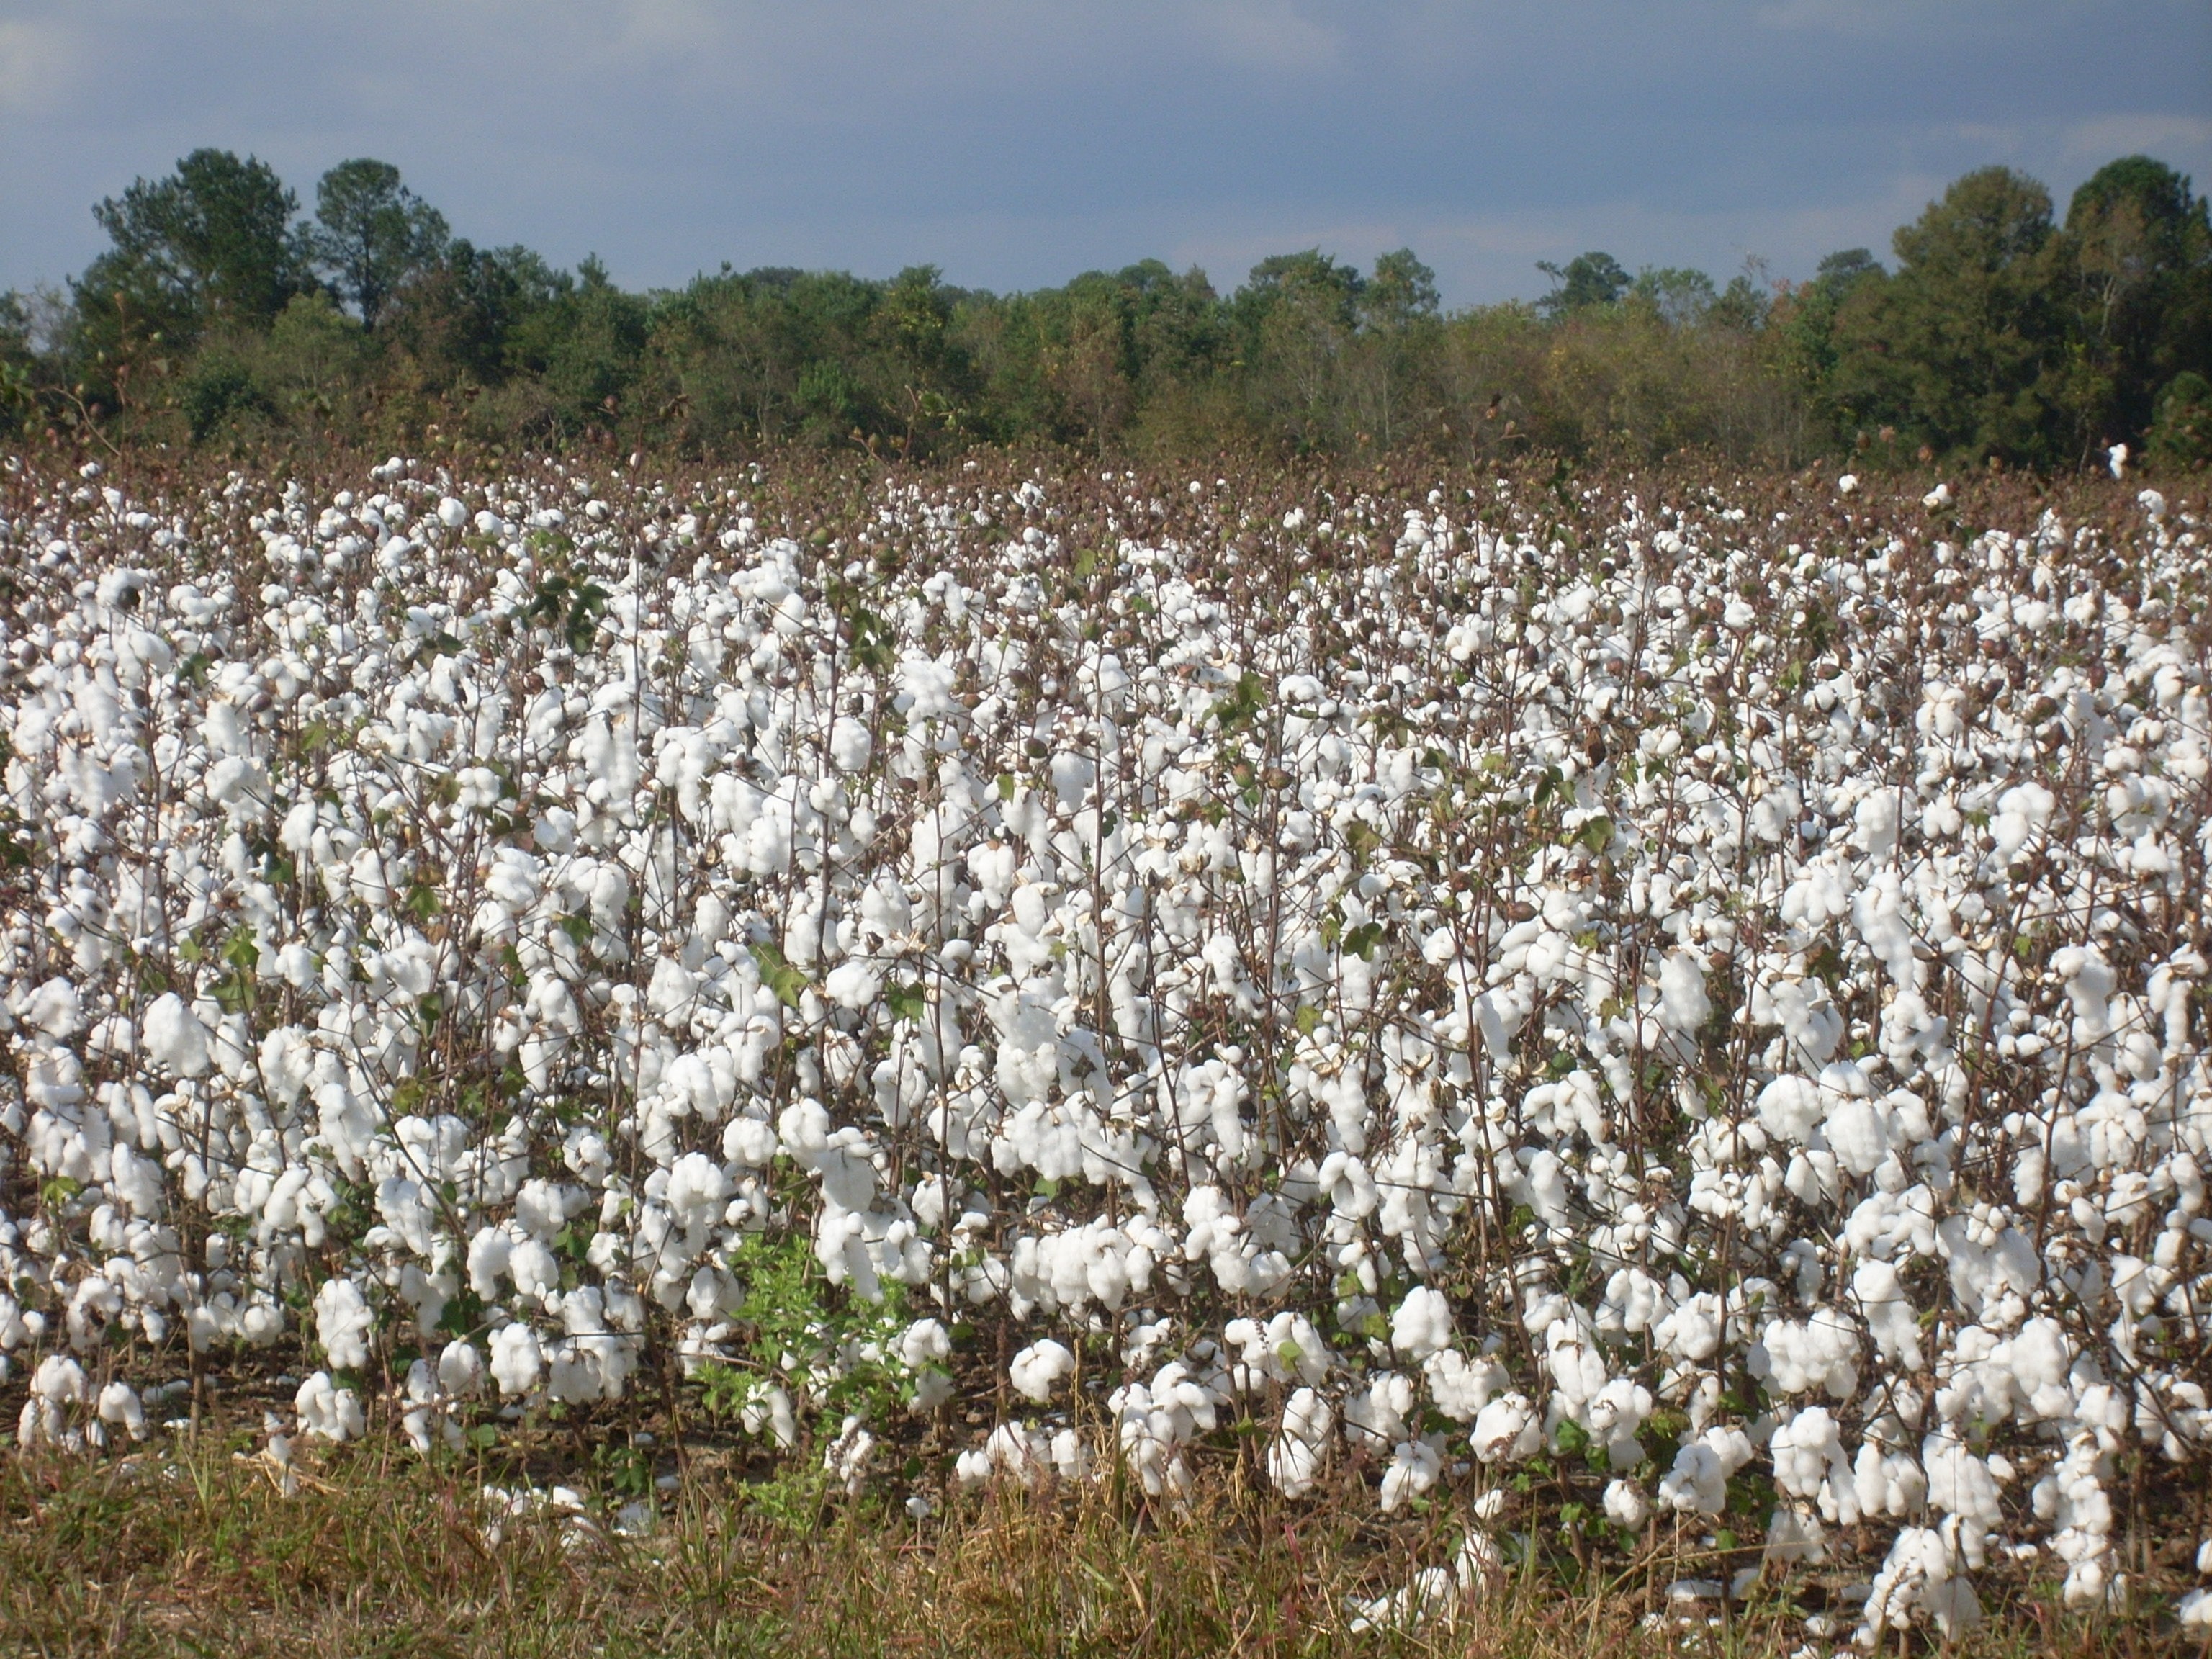 Harvest, Cotton, Textile, Plant, Field, agriculture, nature